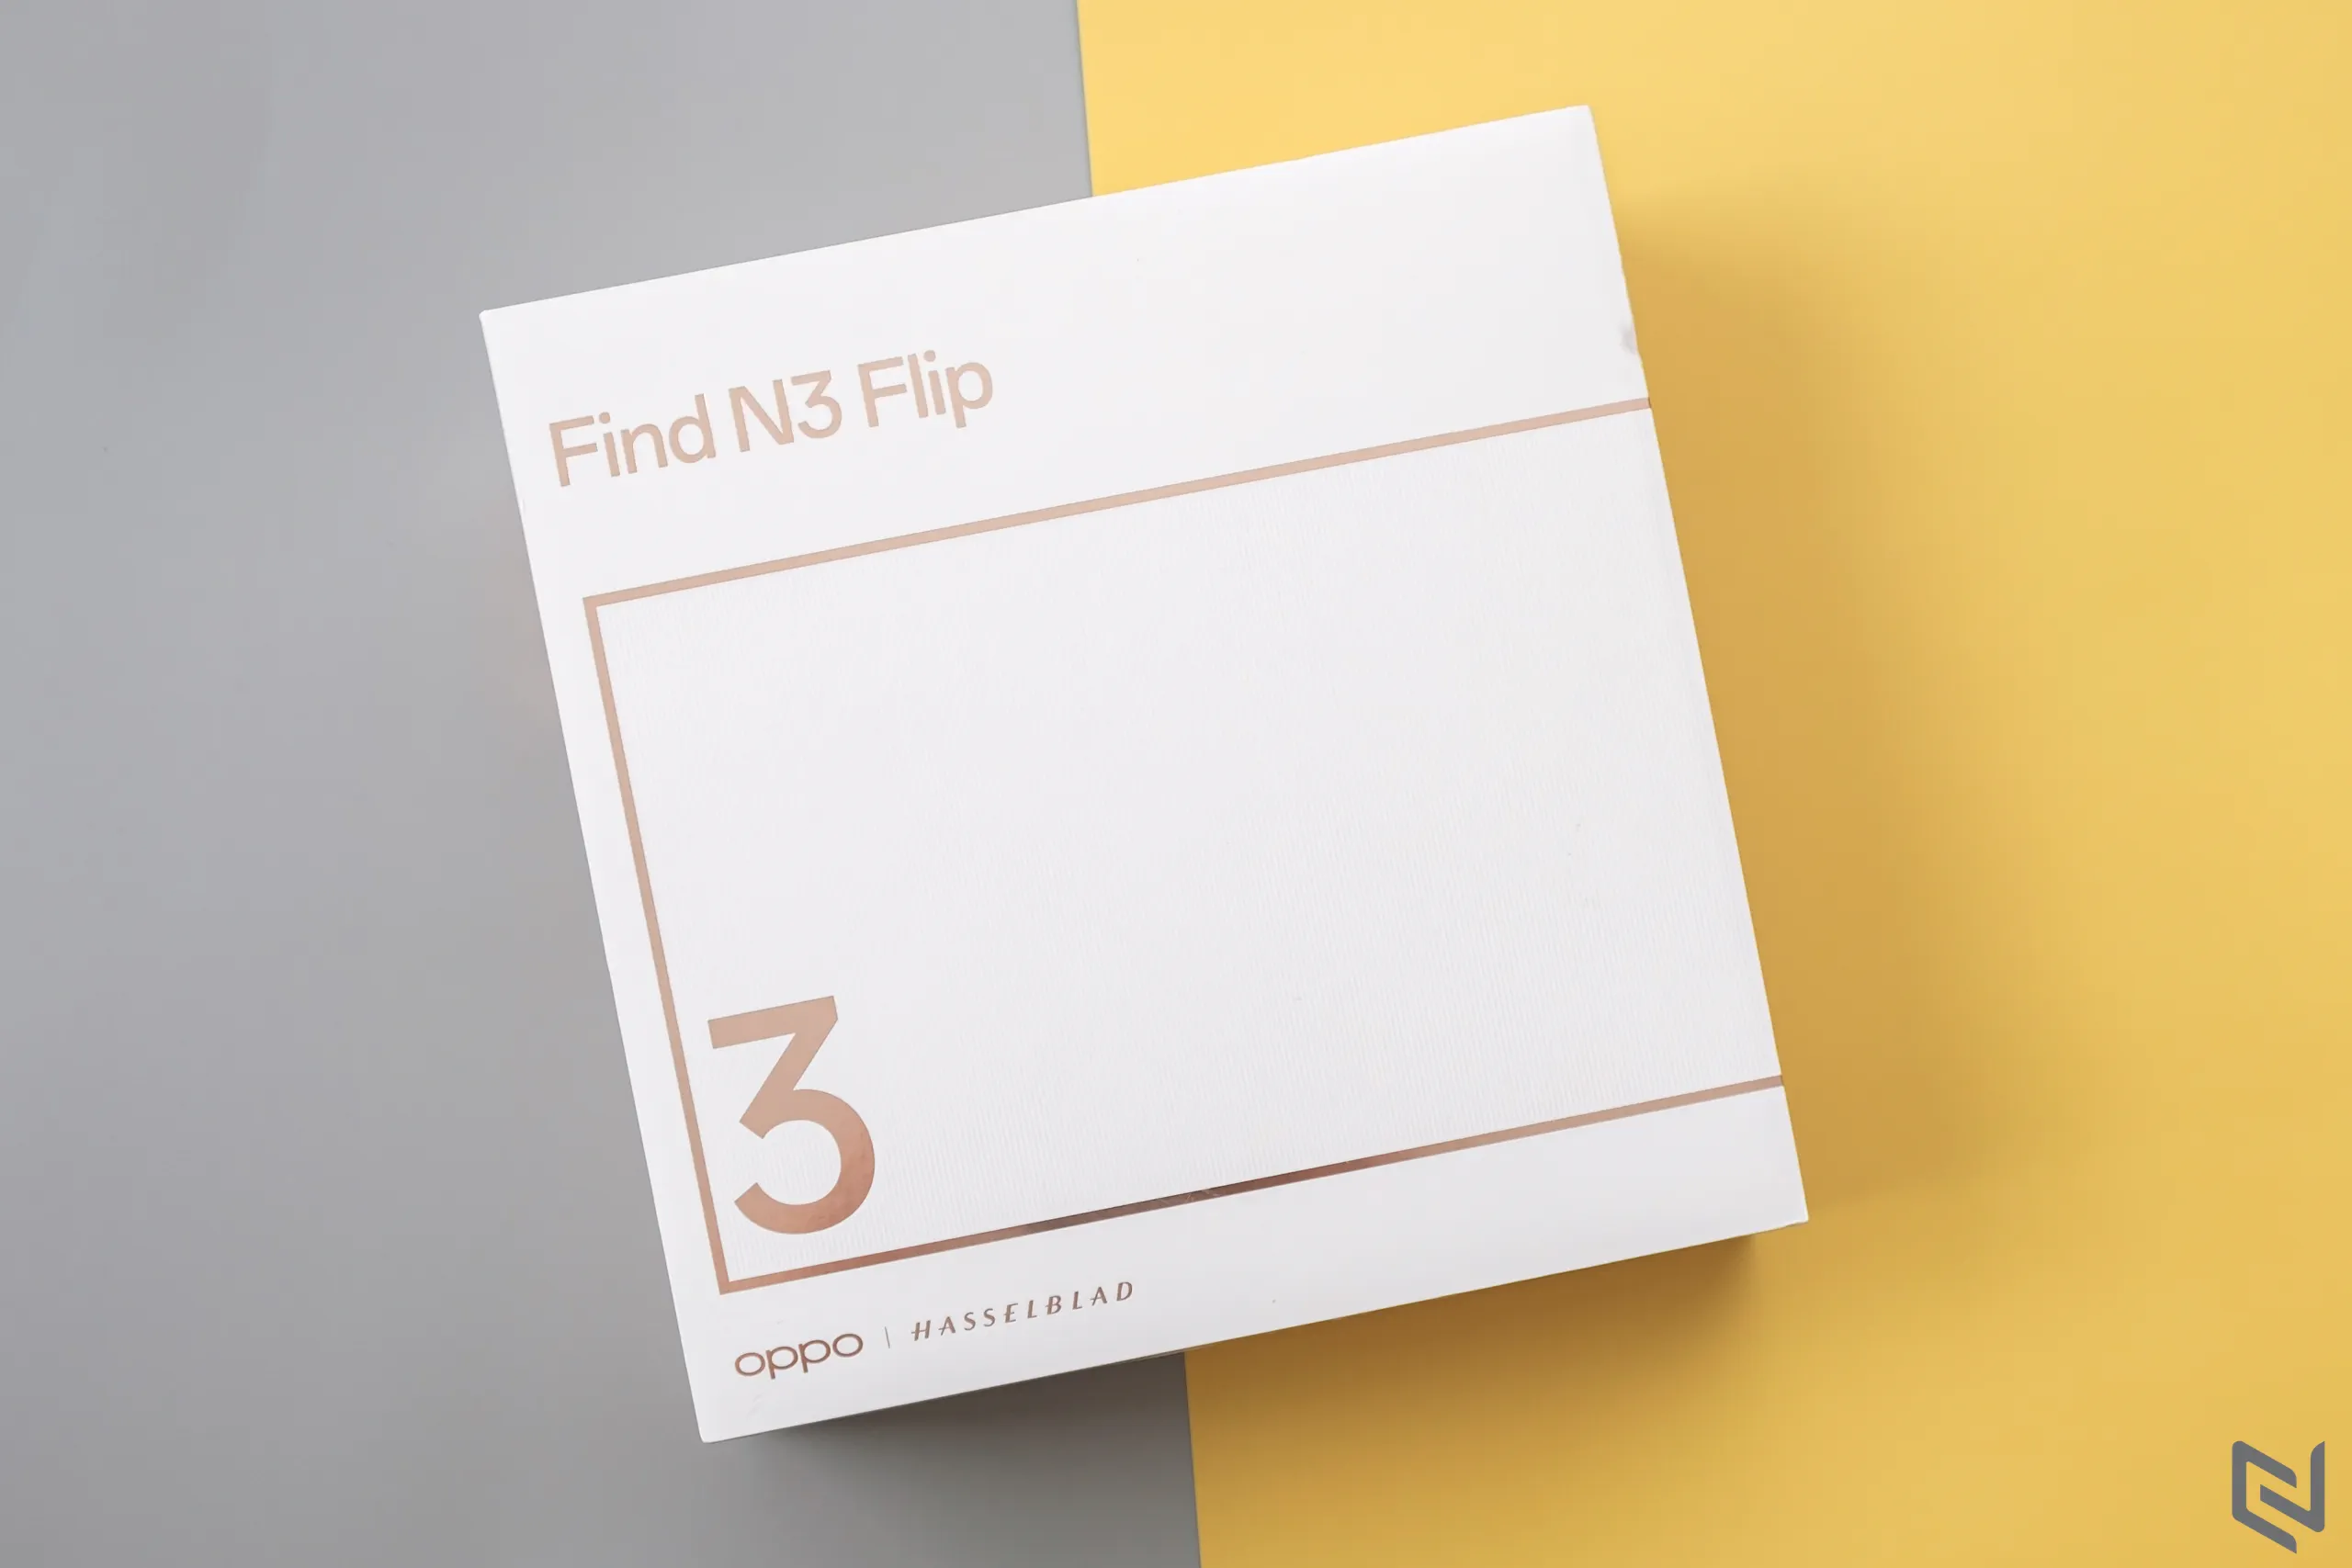 Mở hộp OPPO Find N3 Flip - Thiết kế thời thượng, màn hình phụ nhiều tính năng và cụm ba camera Hasselblad